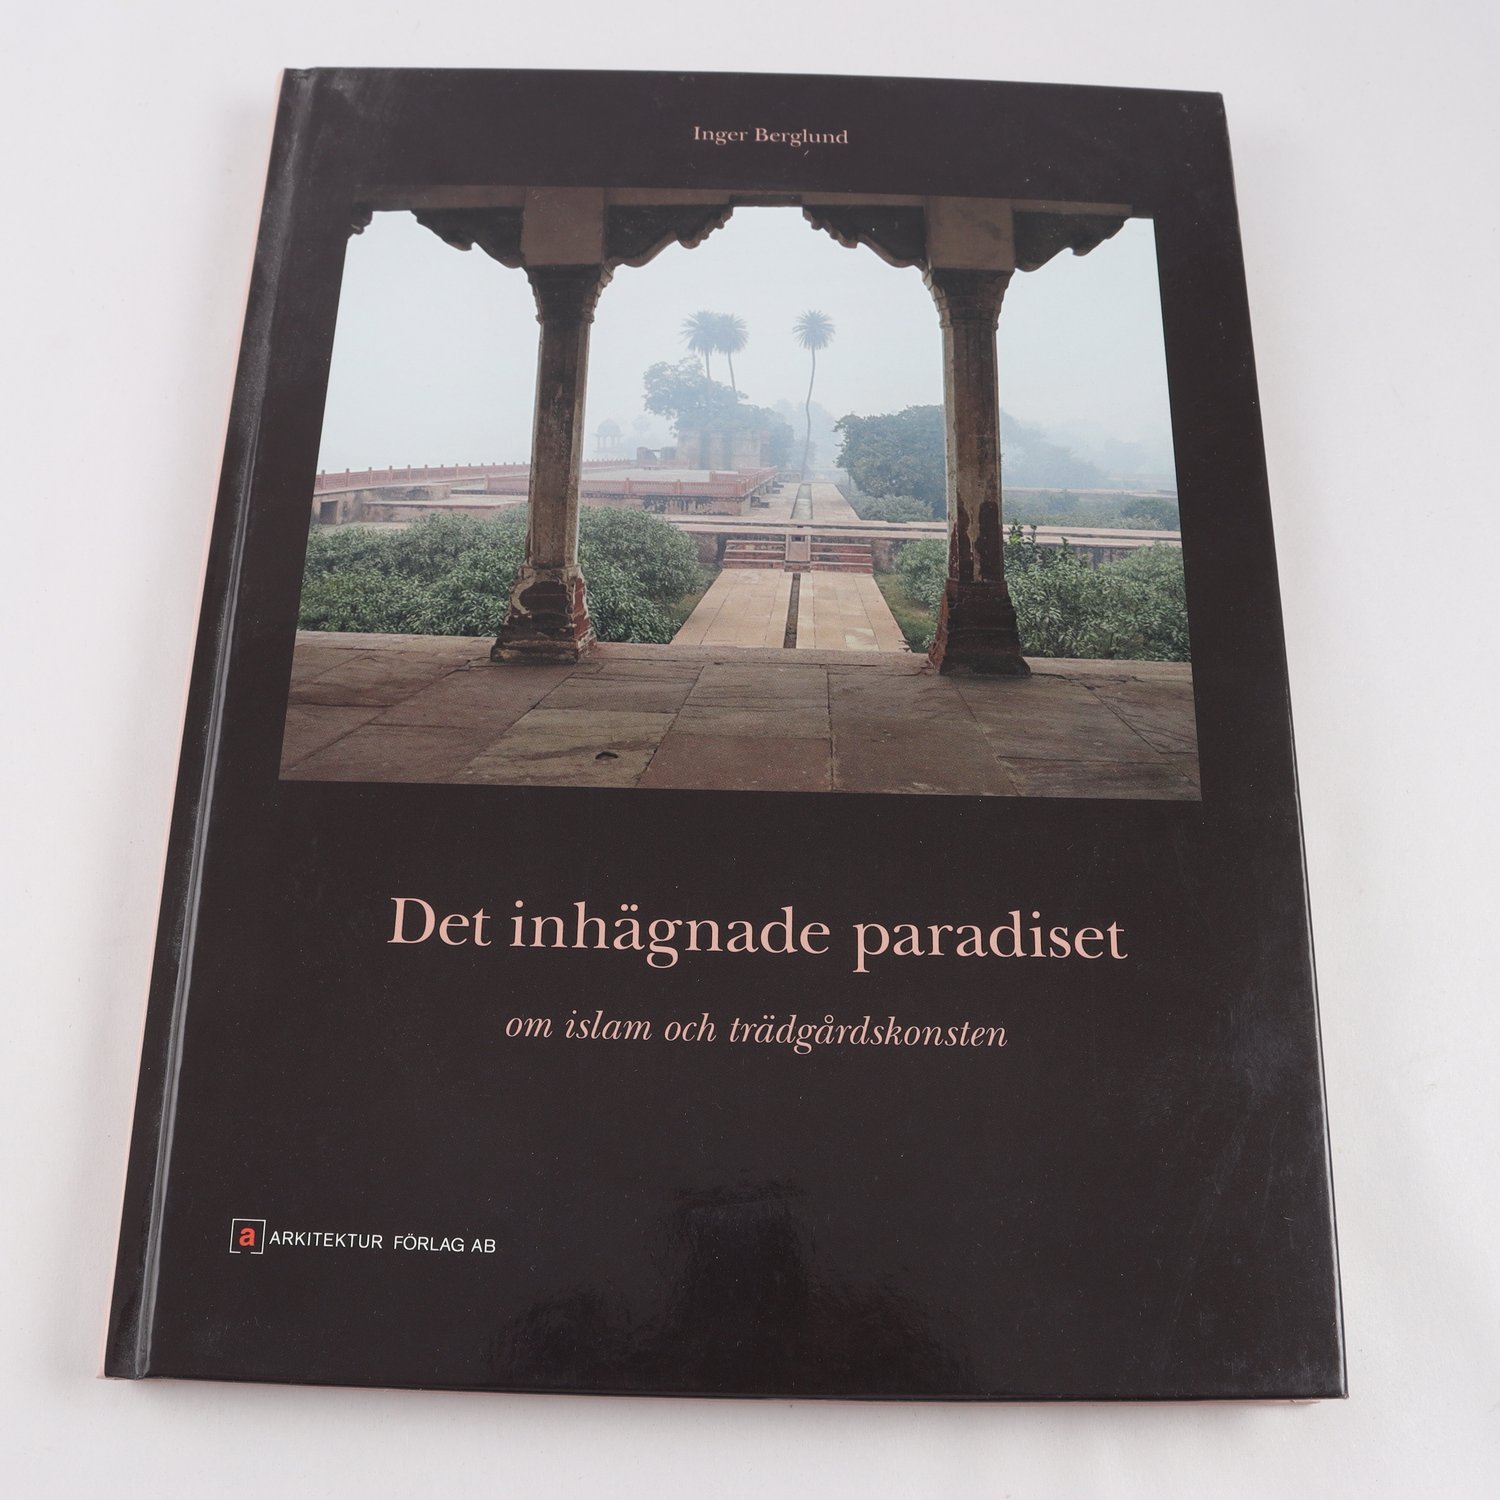 Det inhägnade paradiset: Om islam och trädgårdskonsten